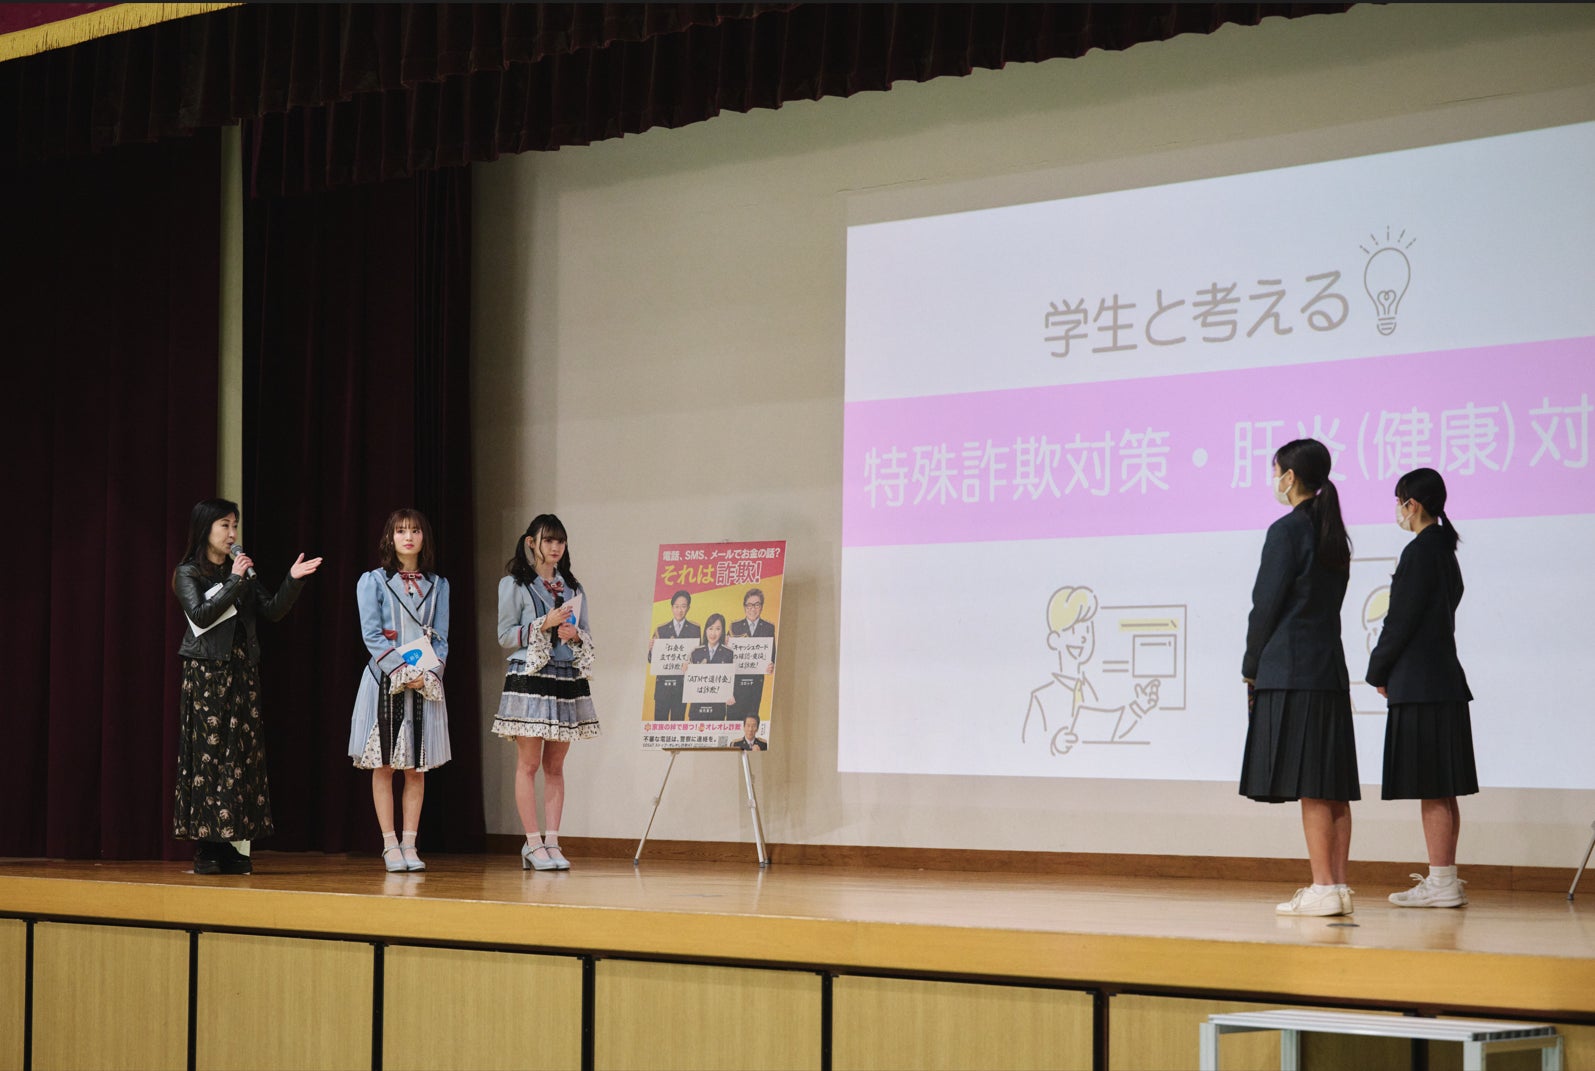 伍代 夏子氏、NMB48新澤 菜央氏、佐月 愛果氏が学生と共に健康について考える「“自分の家族は大丈夫”と思わずに、まずは肝炎ウイルス検査を。」のサブ画像3